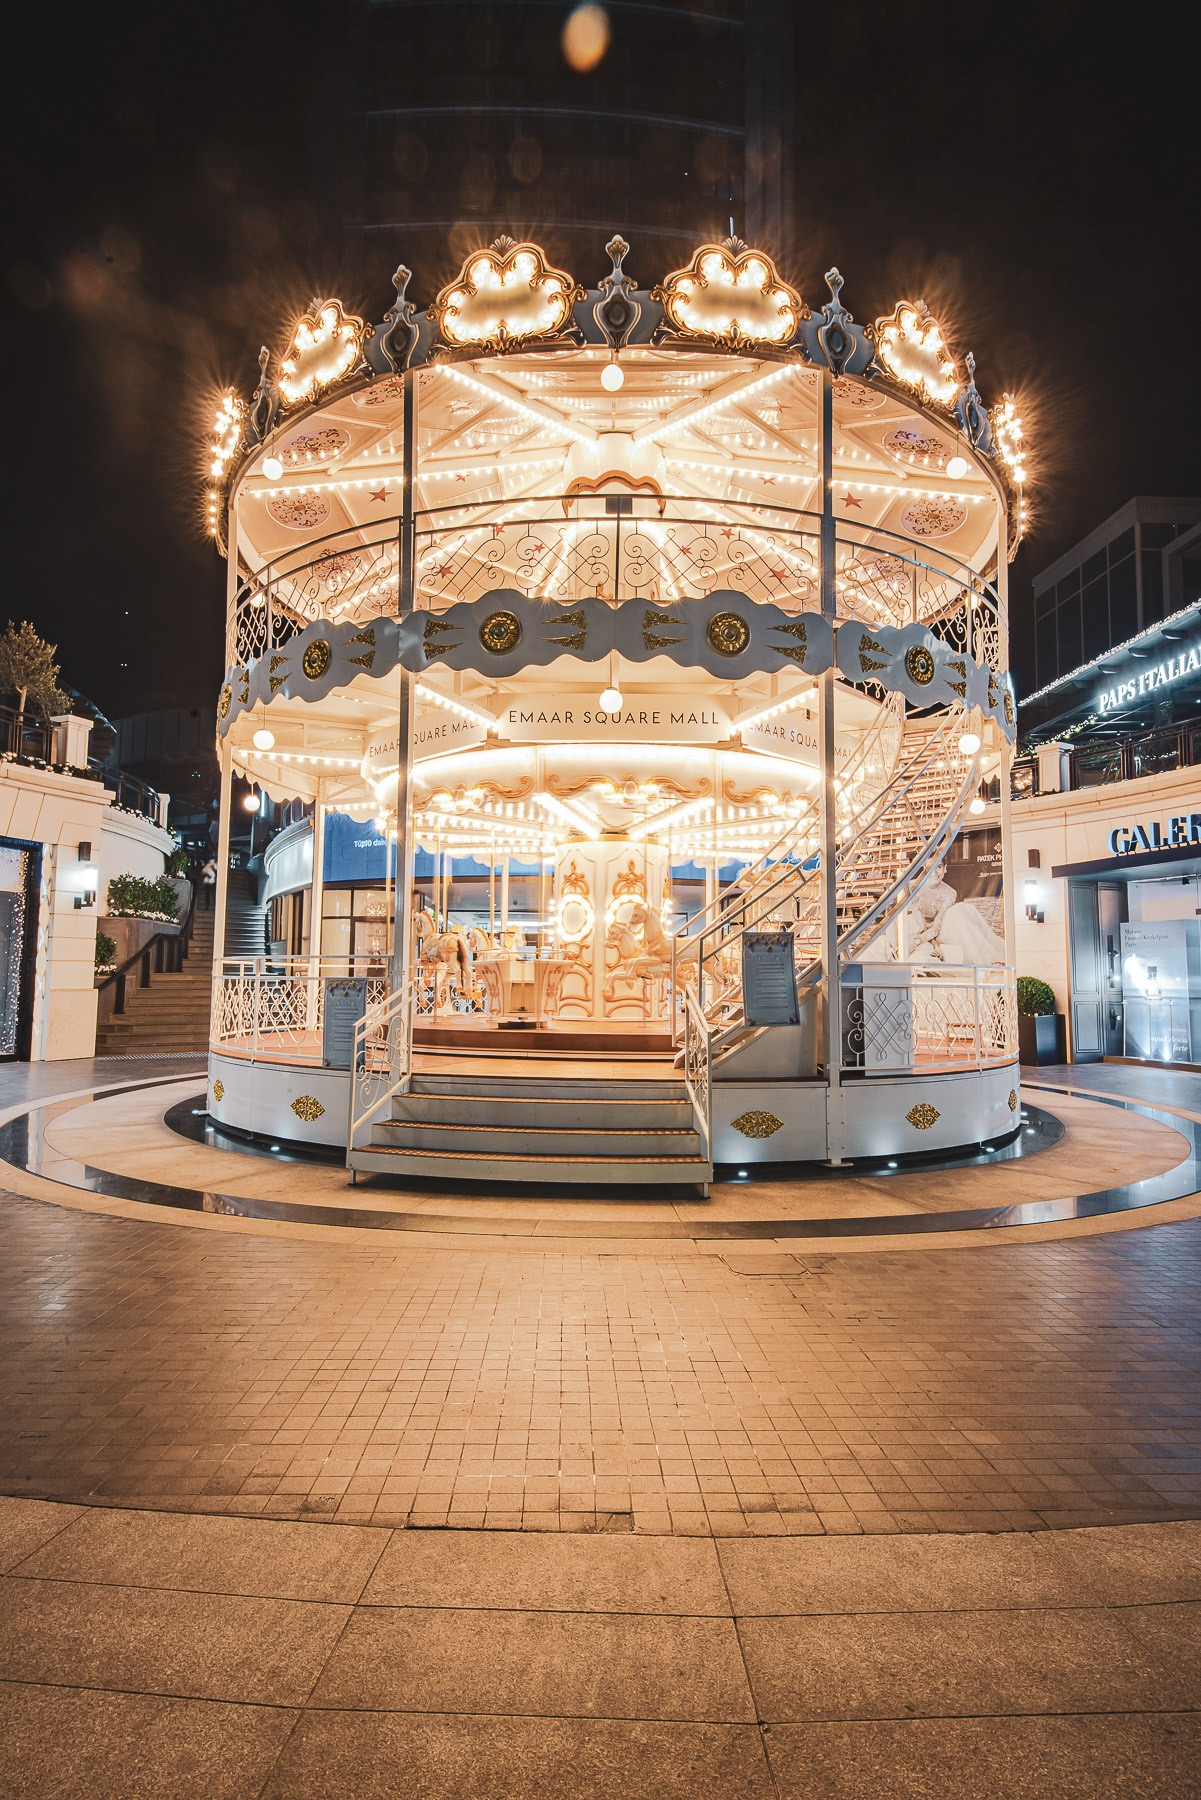 Emaar Square Mall Carousel Design for Festive Season